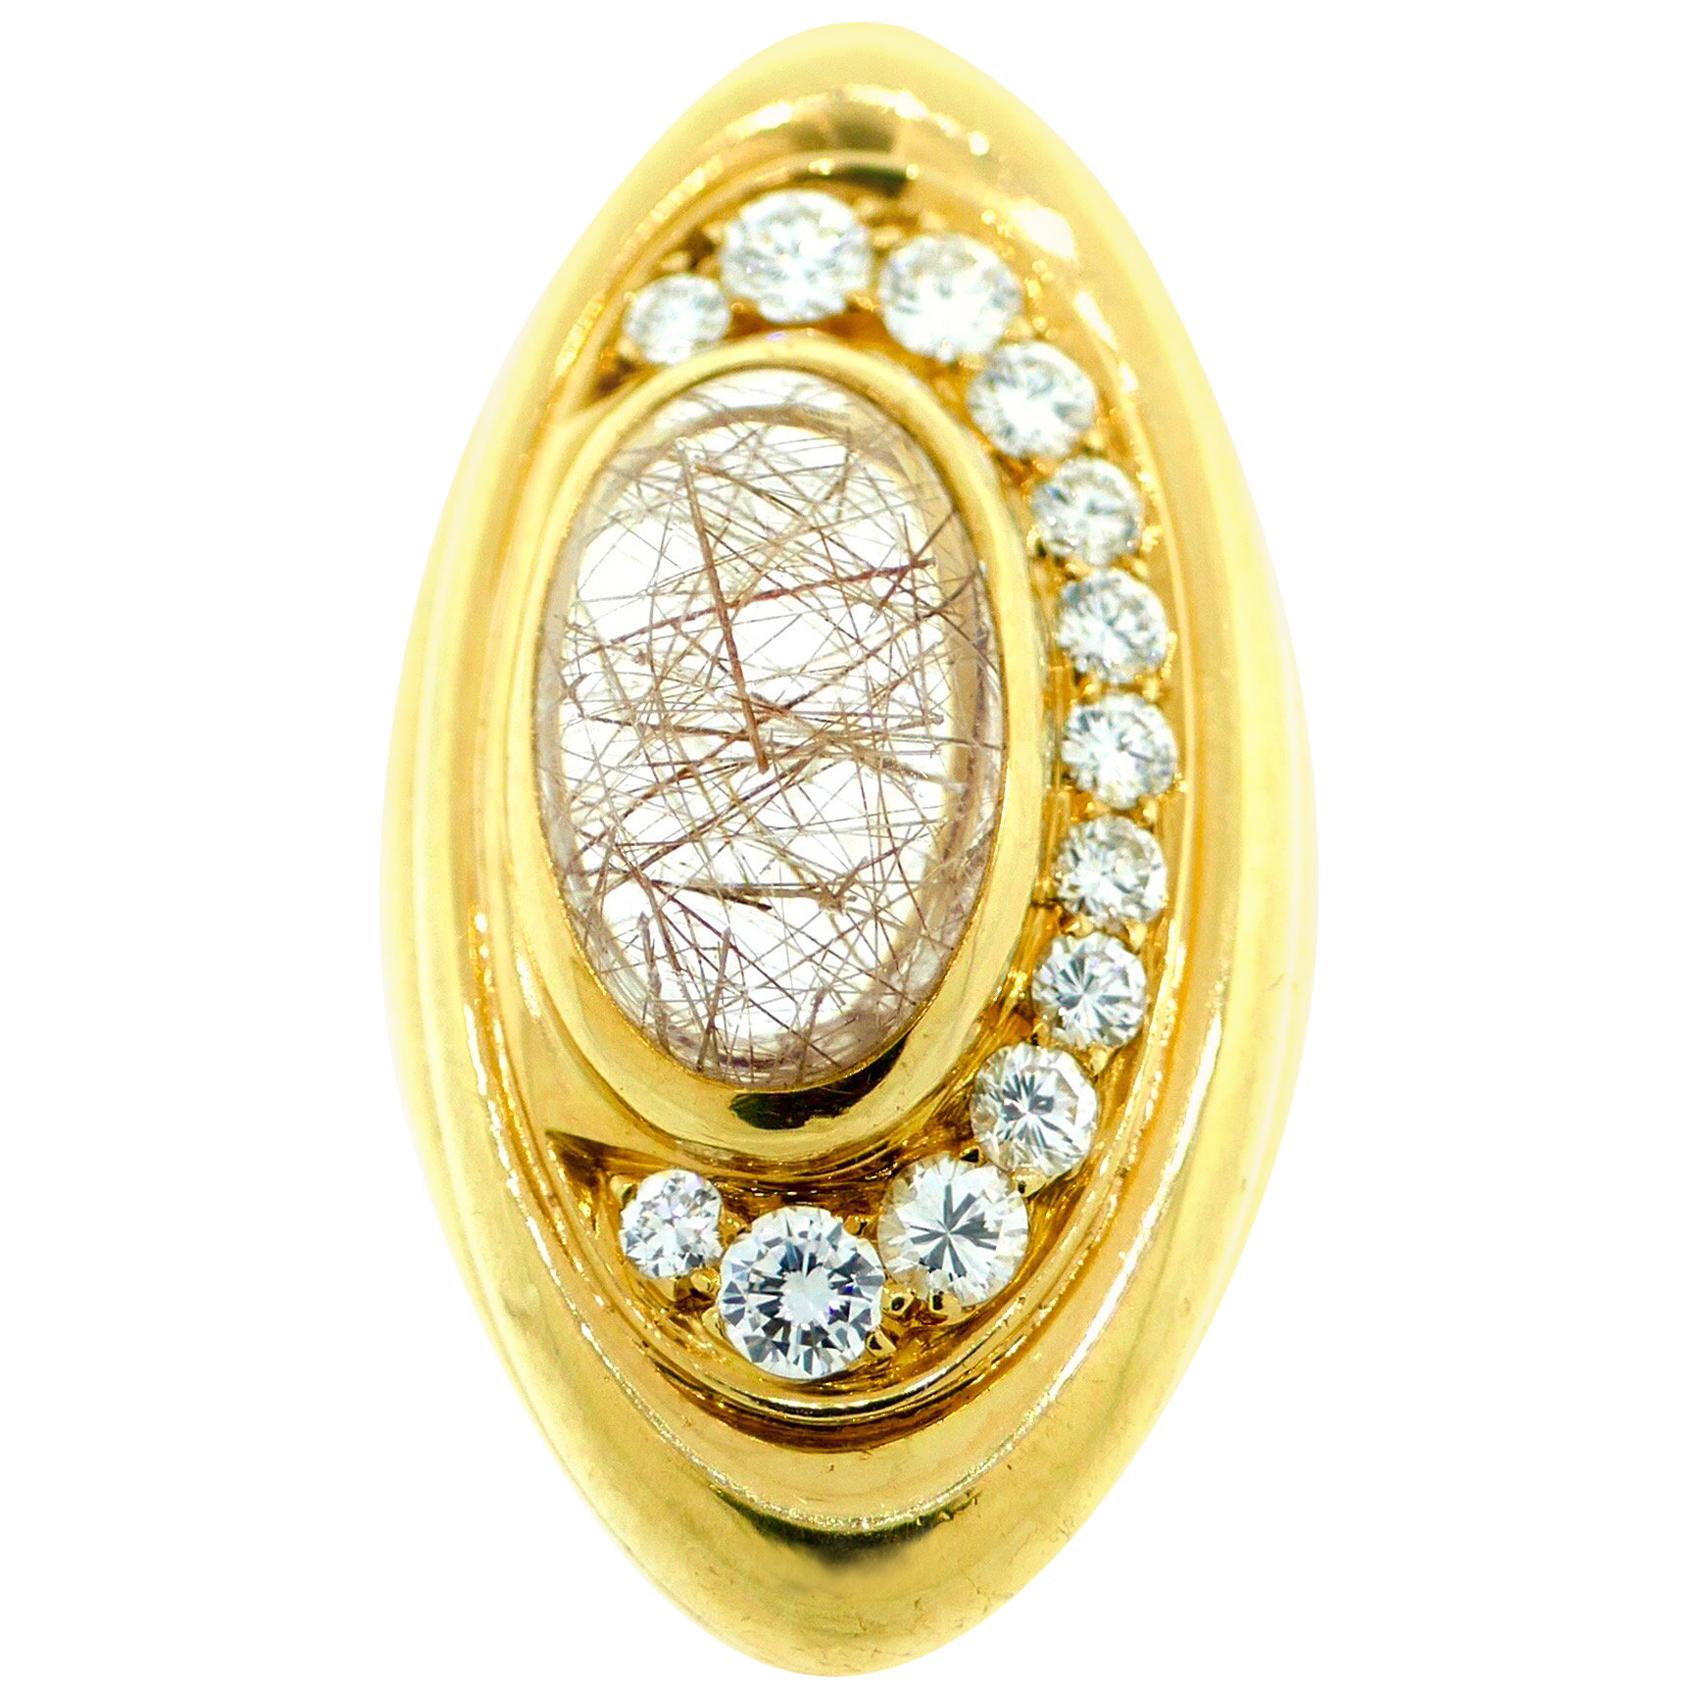 Bvlgari Yellow Gold, Quartz, and Diamond Ring